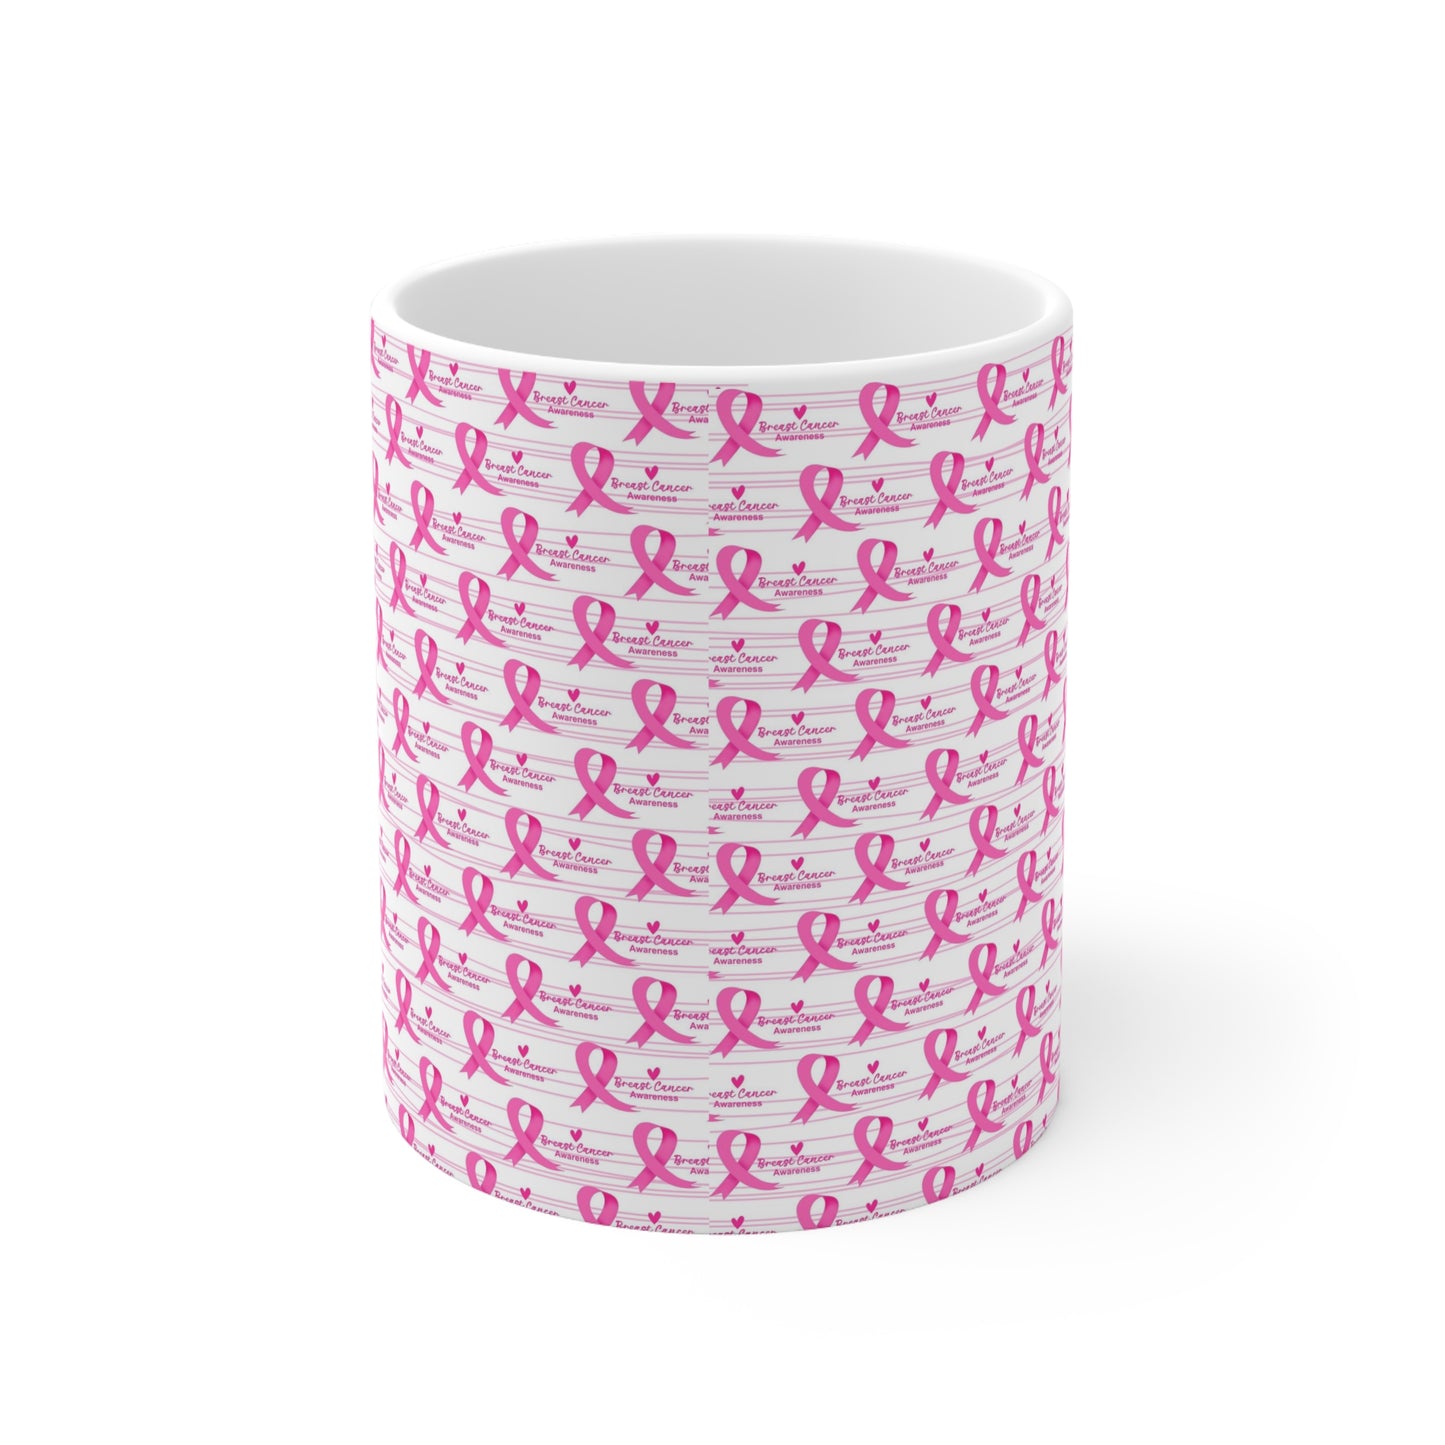 Breast Cancer Awareness Ceramic Mug 11oz